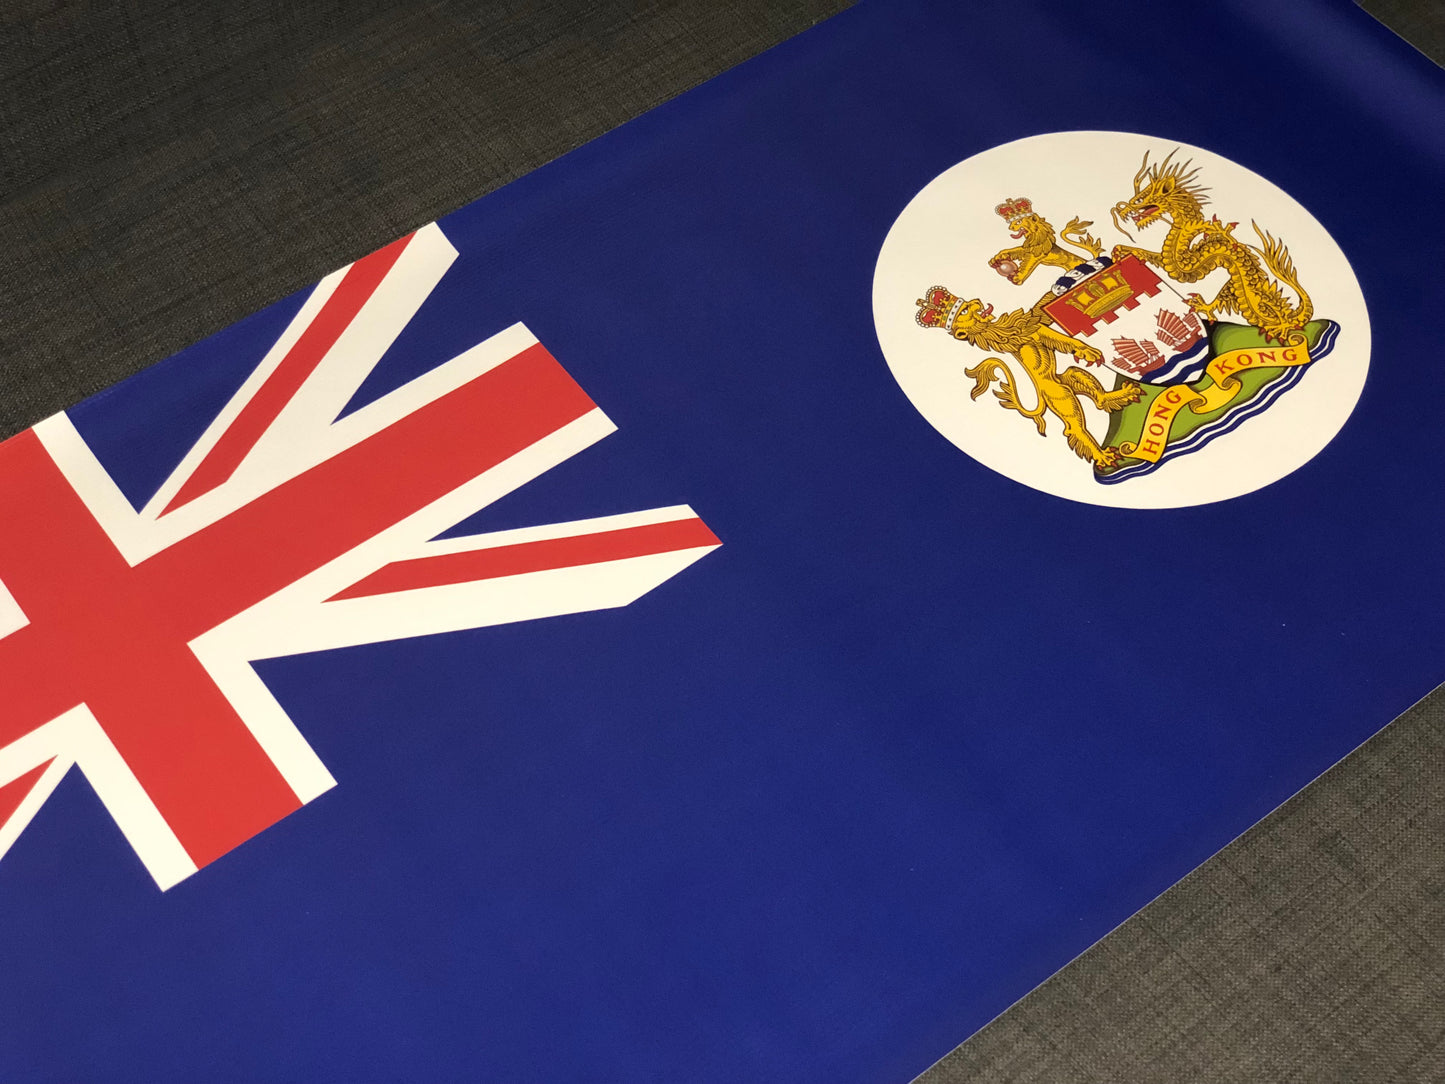 香港旗帆布 Hong Kong Flag PVC Banner 🇬🇧 Made in Britain ✨New Arrival✨